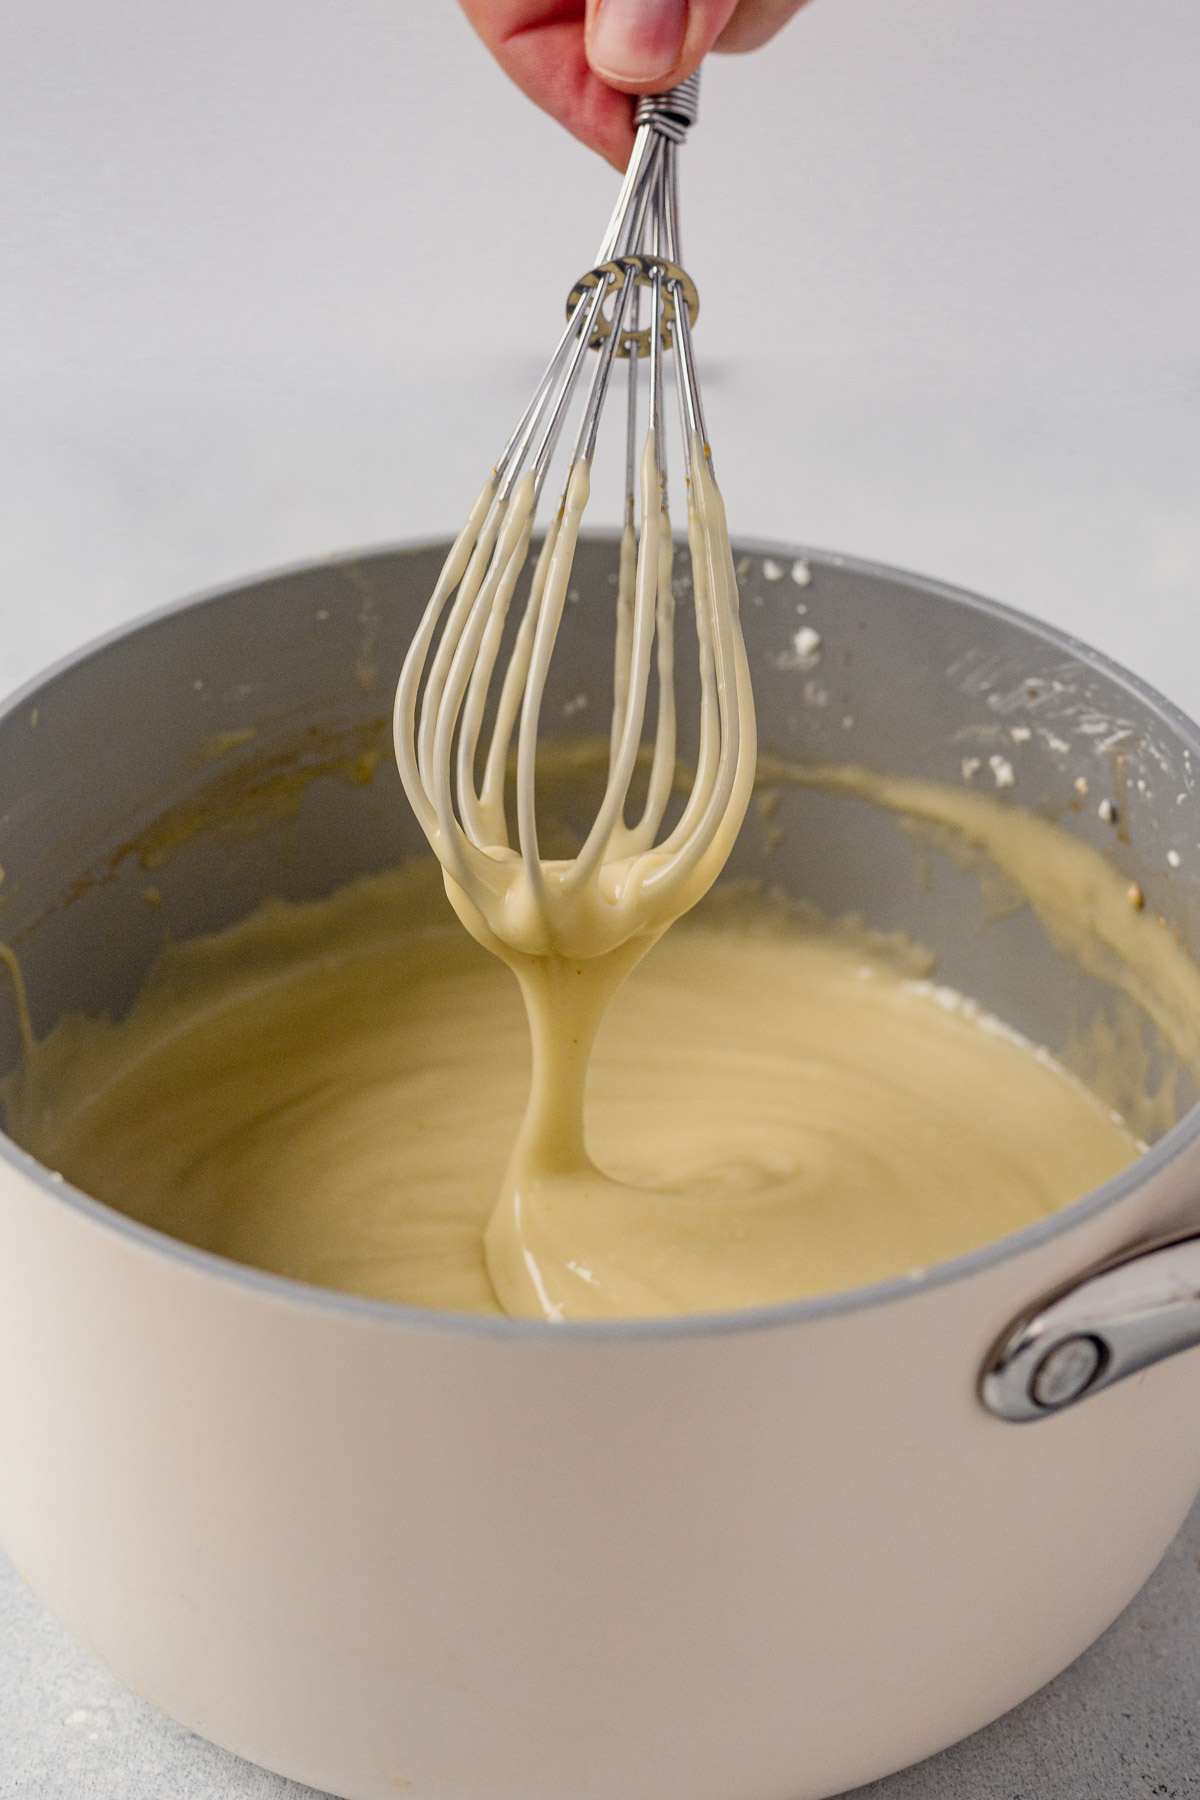 vegan vanilla pudding whisking in a saucepan